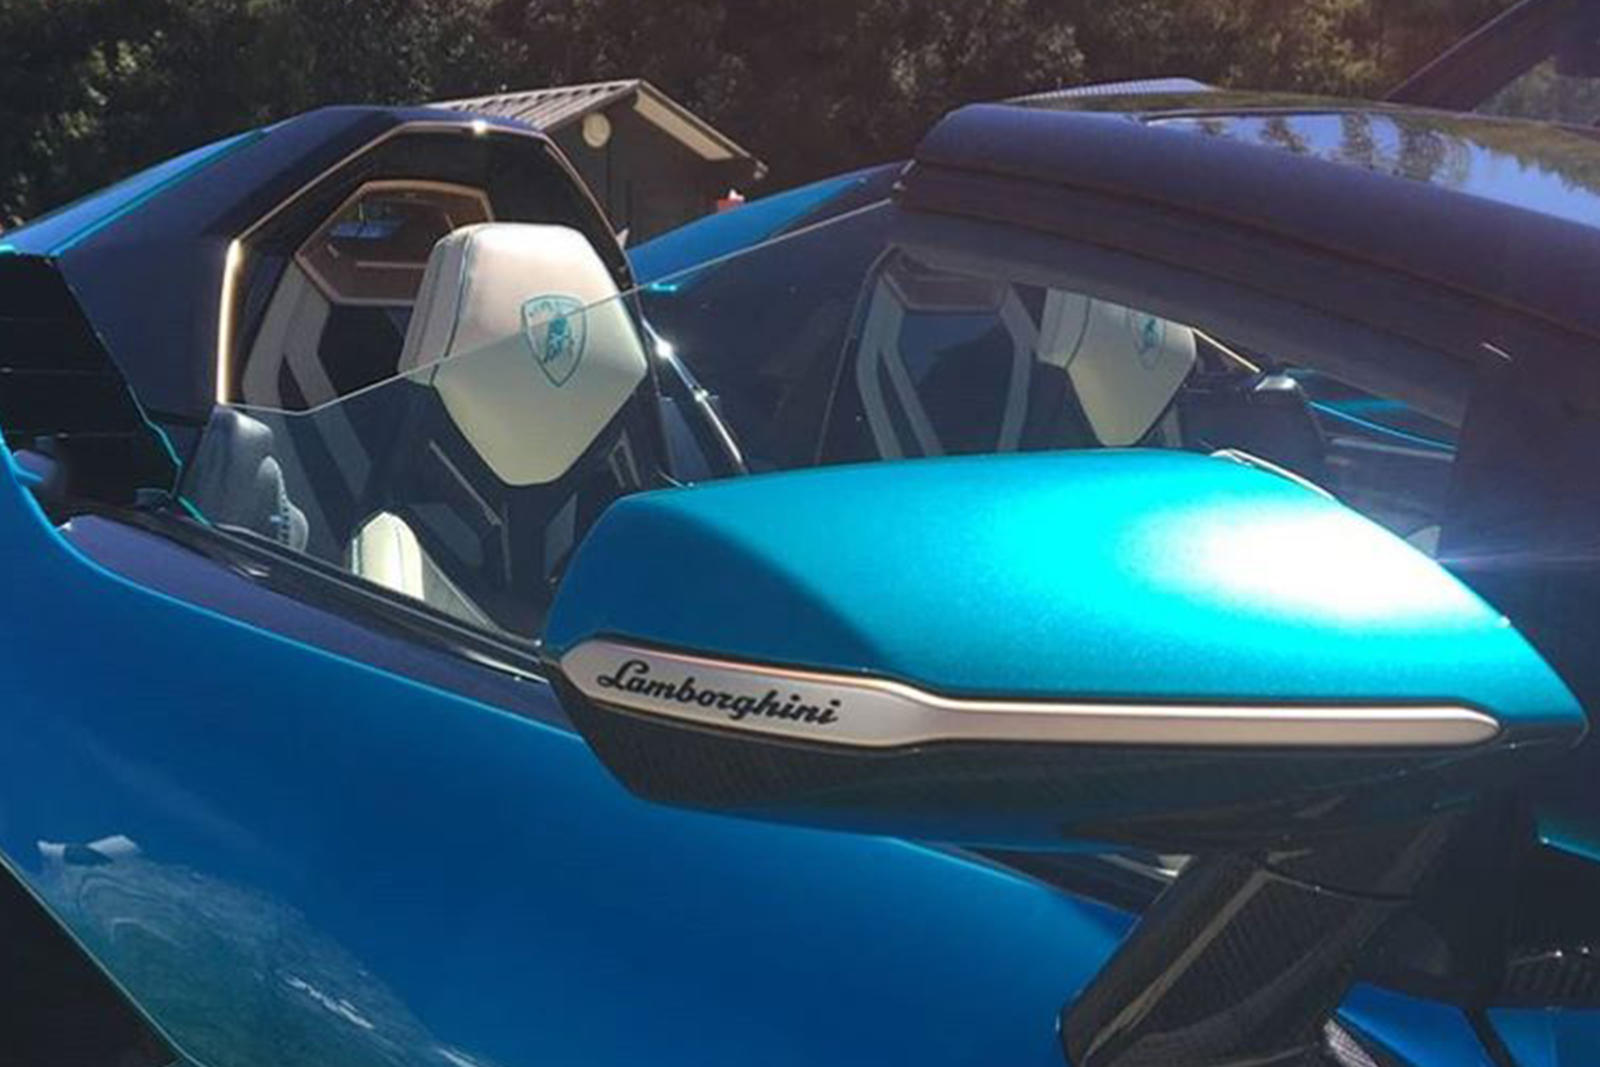 Новый Sian Roadster выделяется даже в мире безумного дизайна суперкаров и потрясающих силовых установок Lamborghini. Недавно он был представлен с его 819-сильной мощностью от его гибридной трансмиссии, но его дерзкий стиль, вероятно, привлечет ваше в